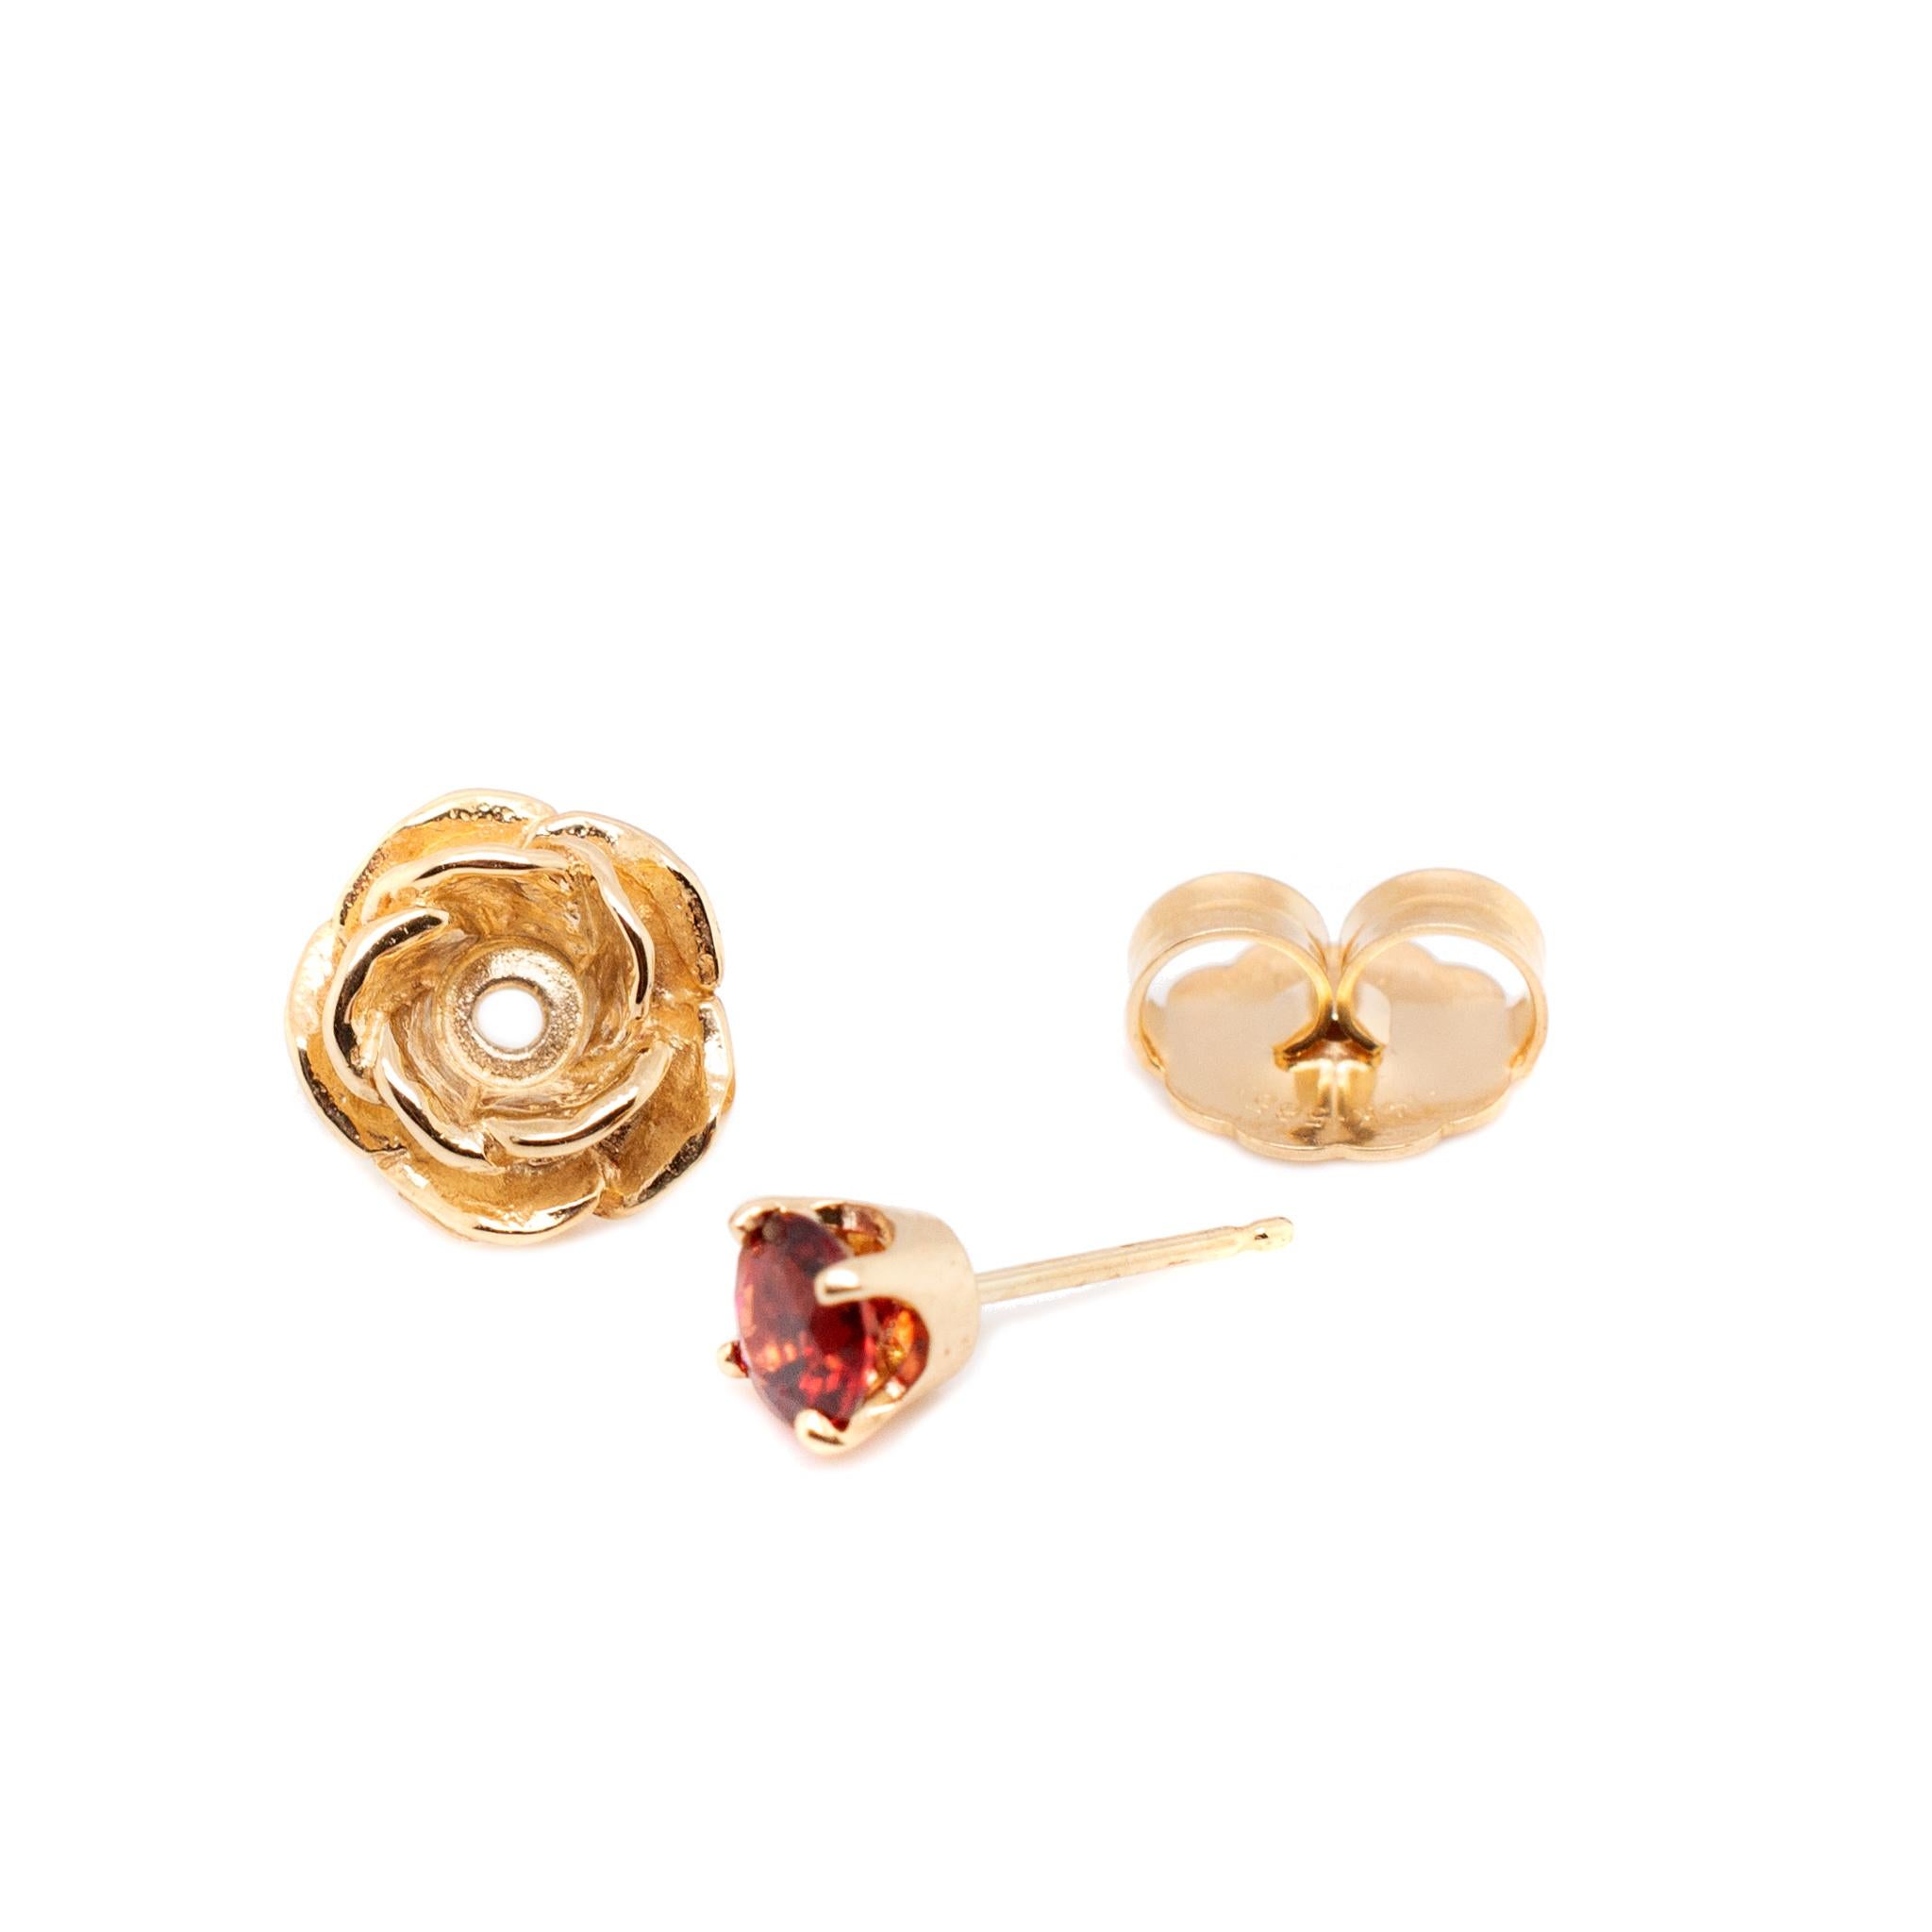 rose earrings james avery